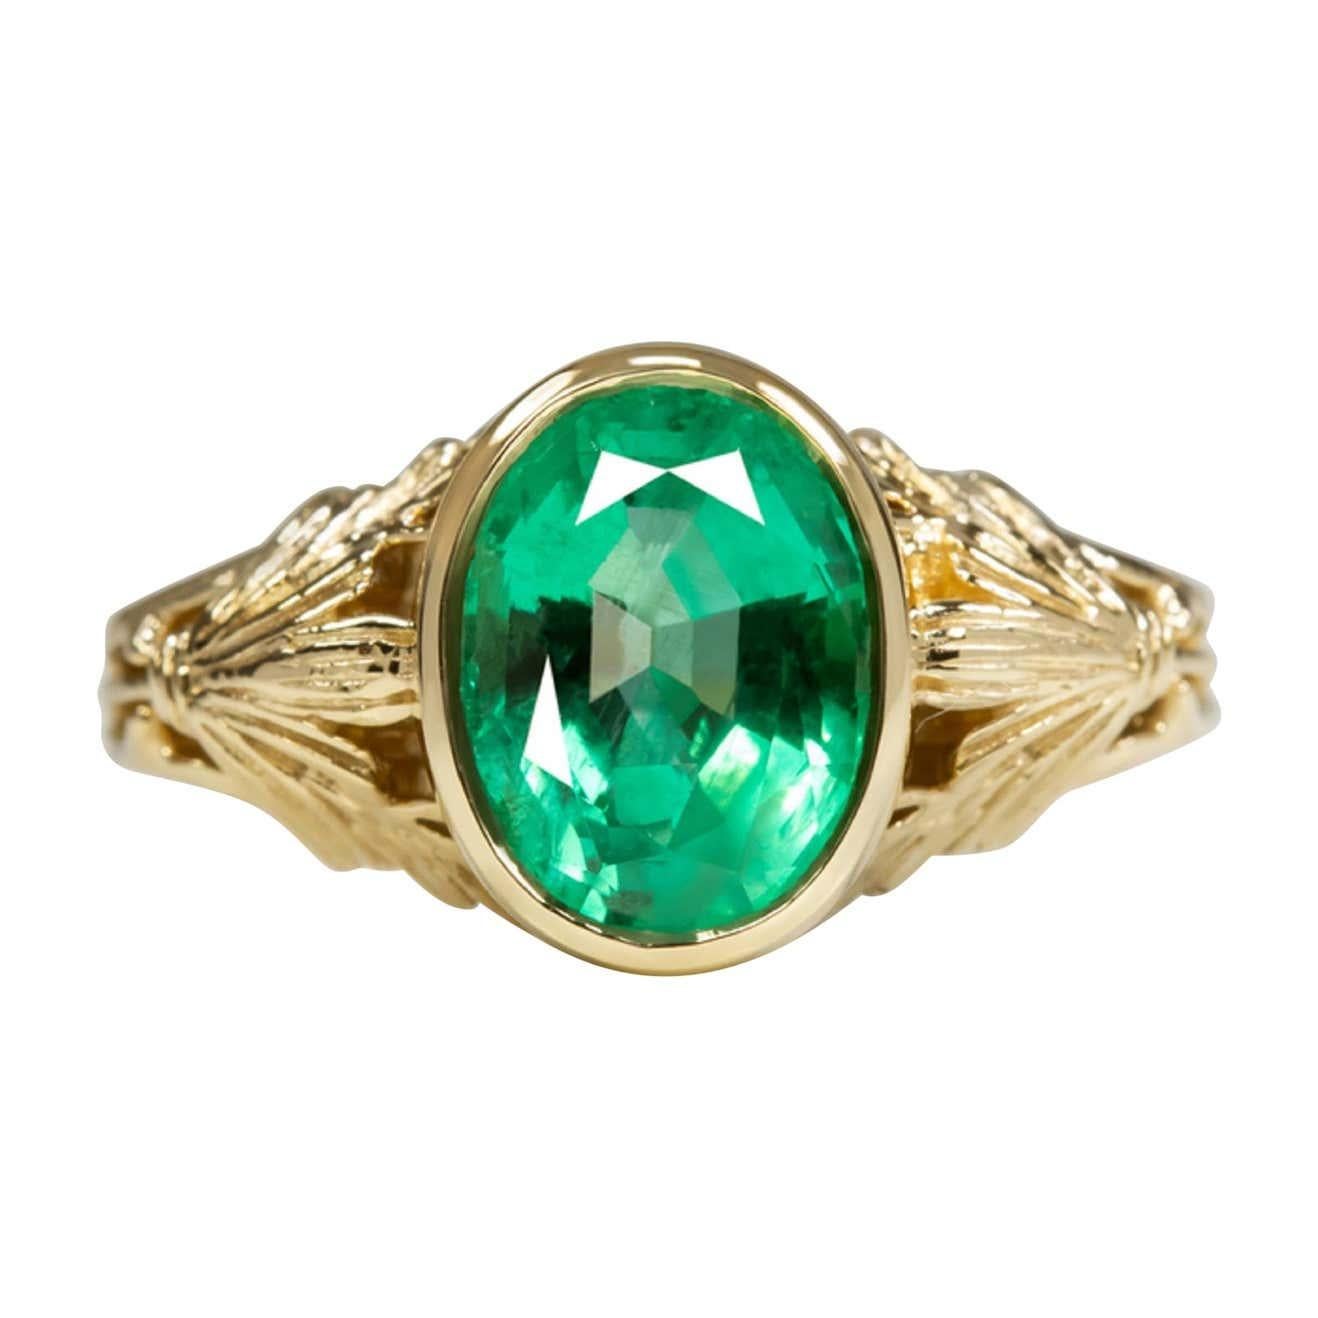 6 carat emerald